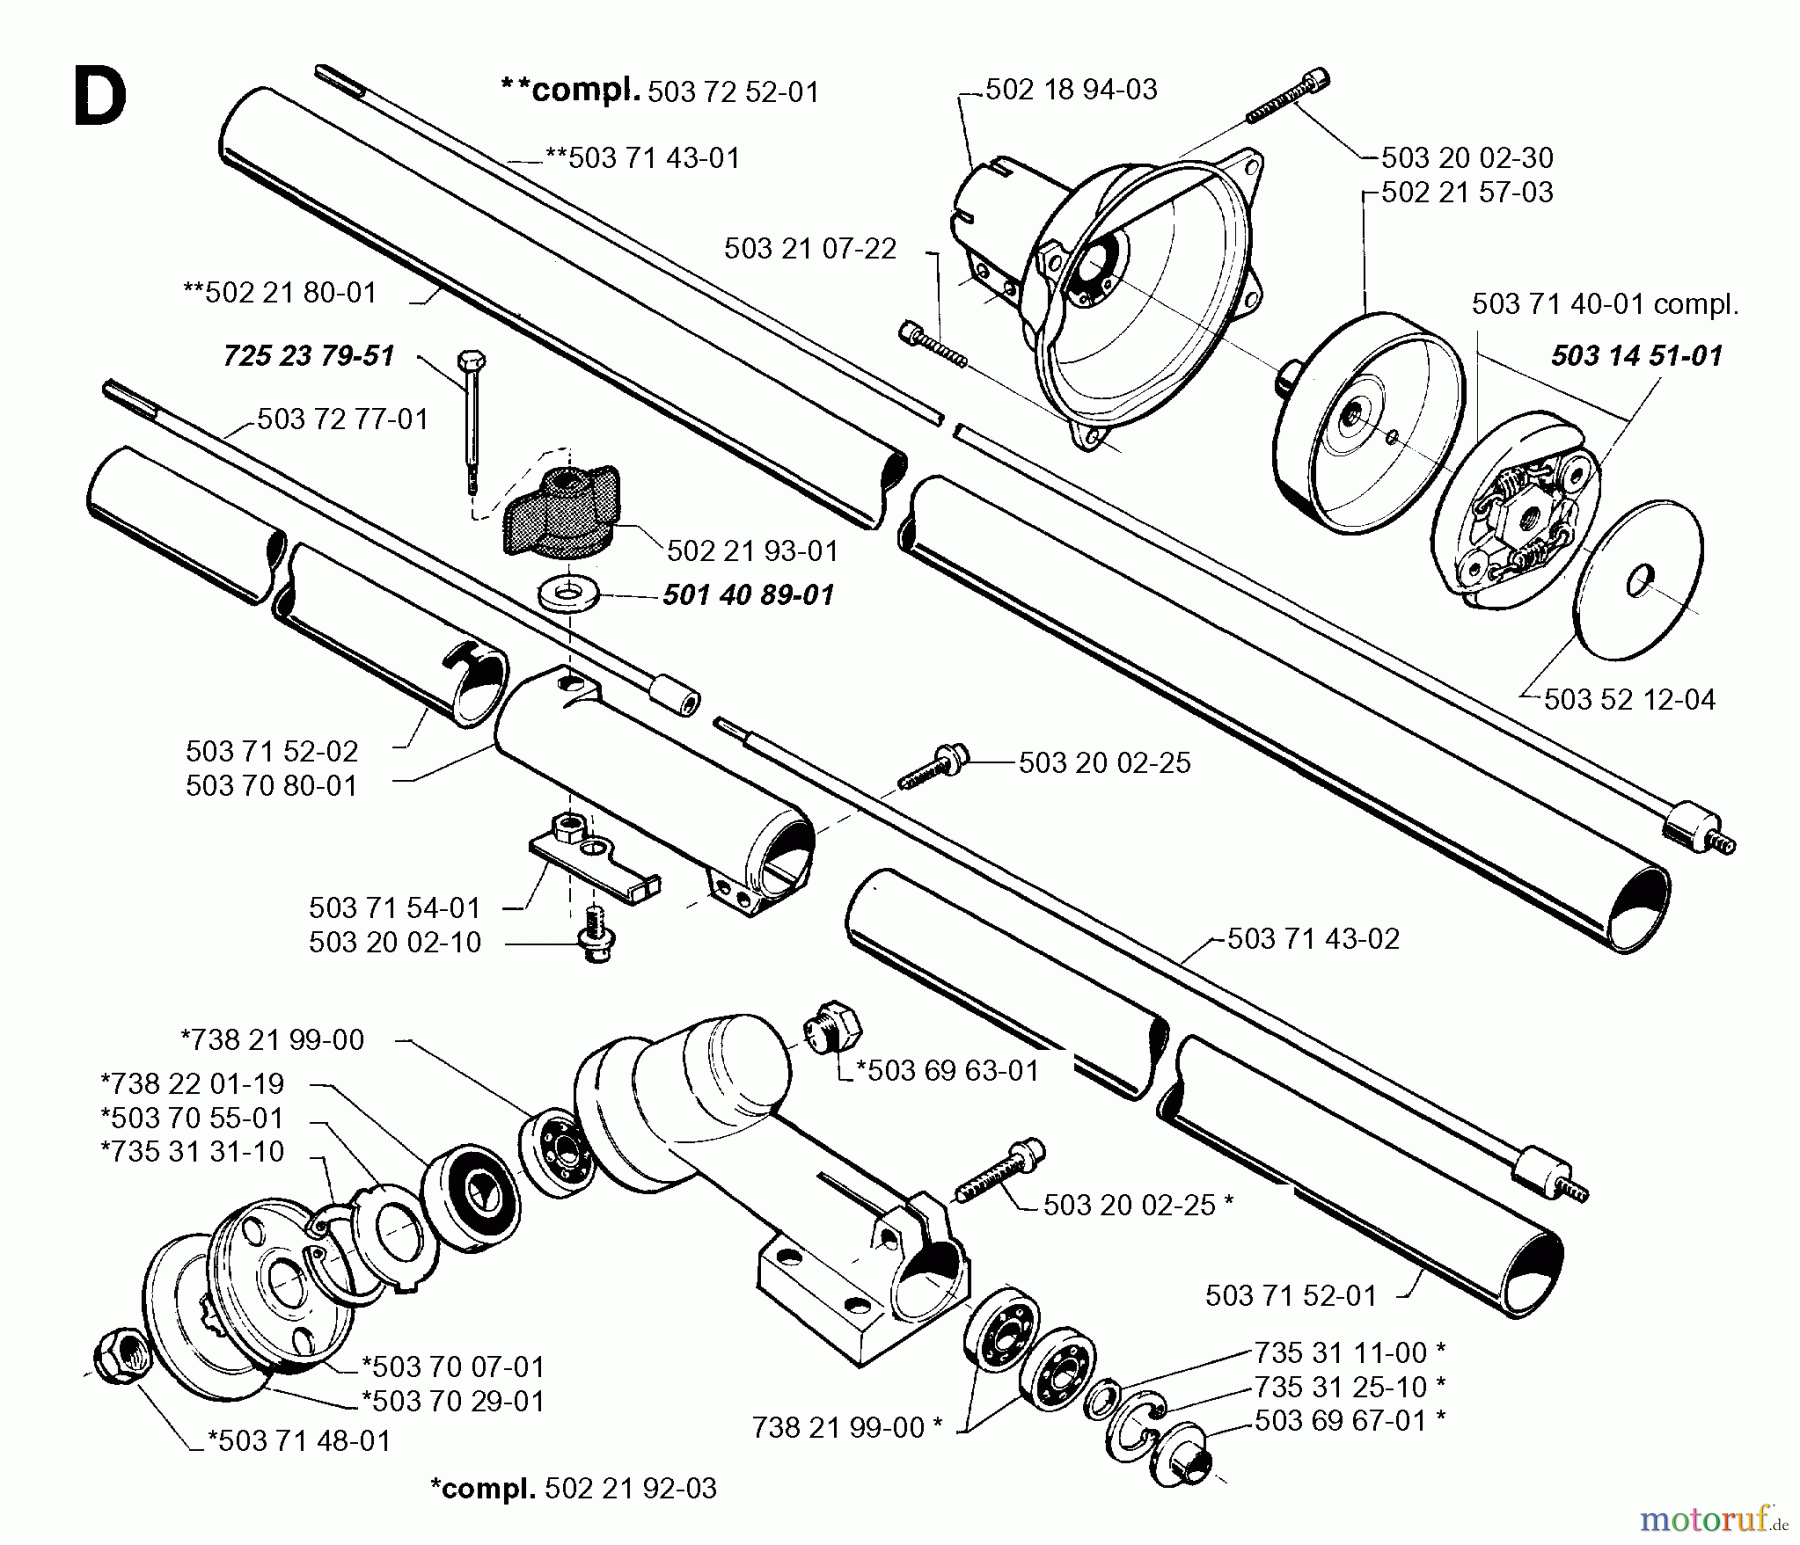  Jonsered Motorsensen, Trimmer GR26 - Jonsered String/Brush Trimmer (1996-01) BEVEL GEAR SHAFT